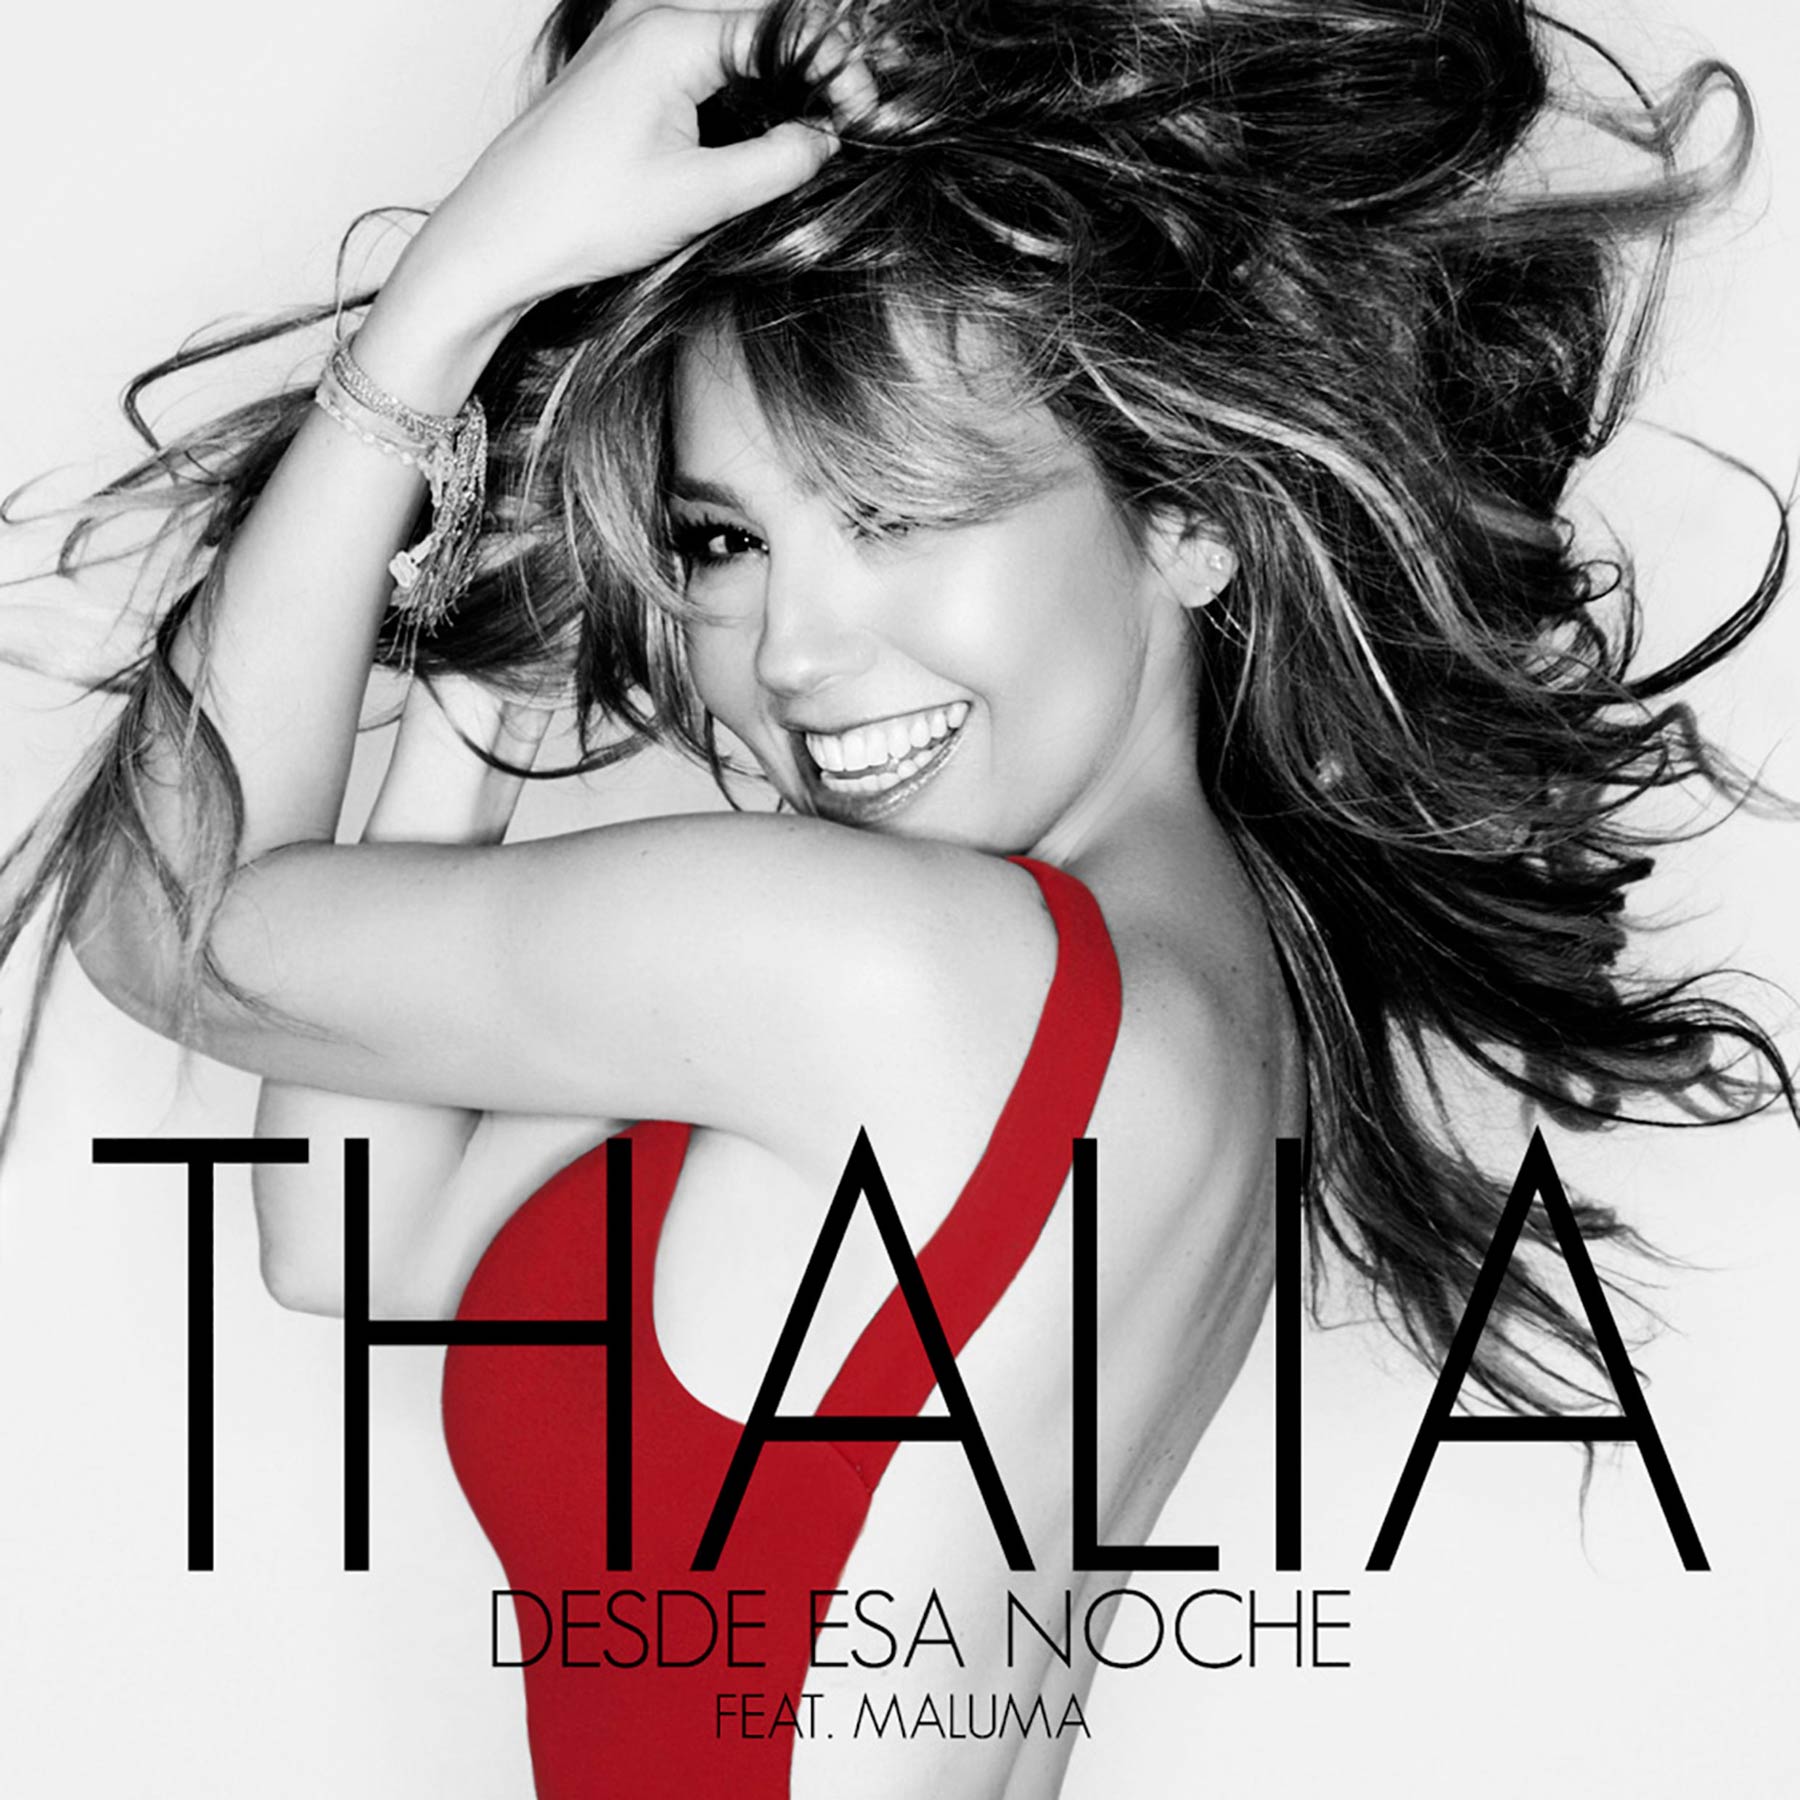 Thalía con Maluma: Desde esa noche, la portada de la canción